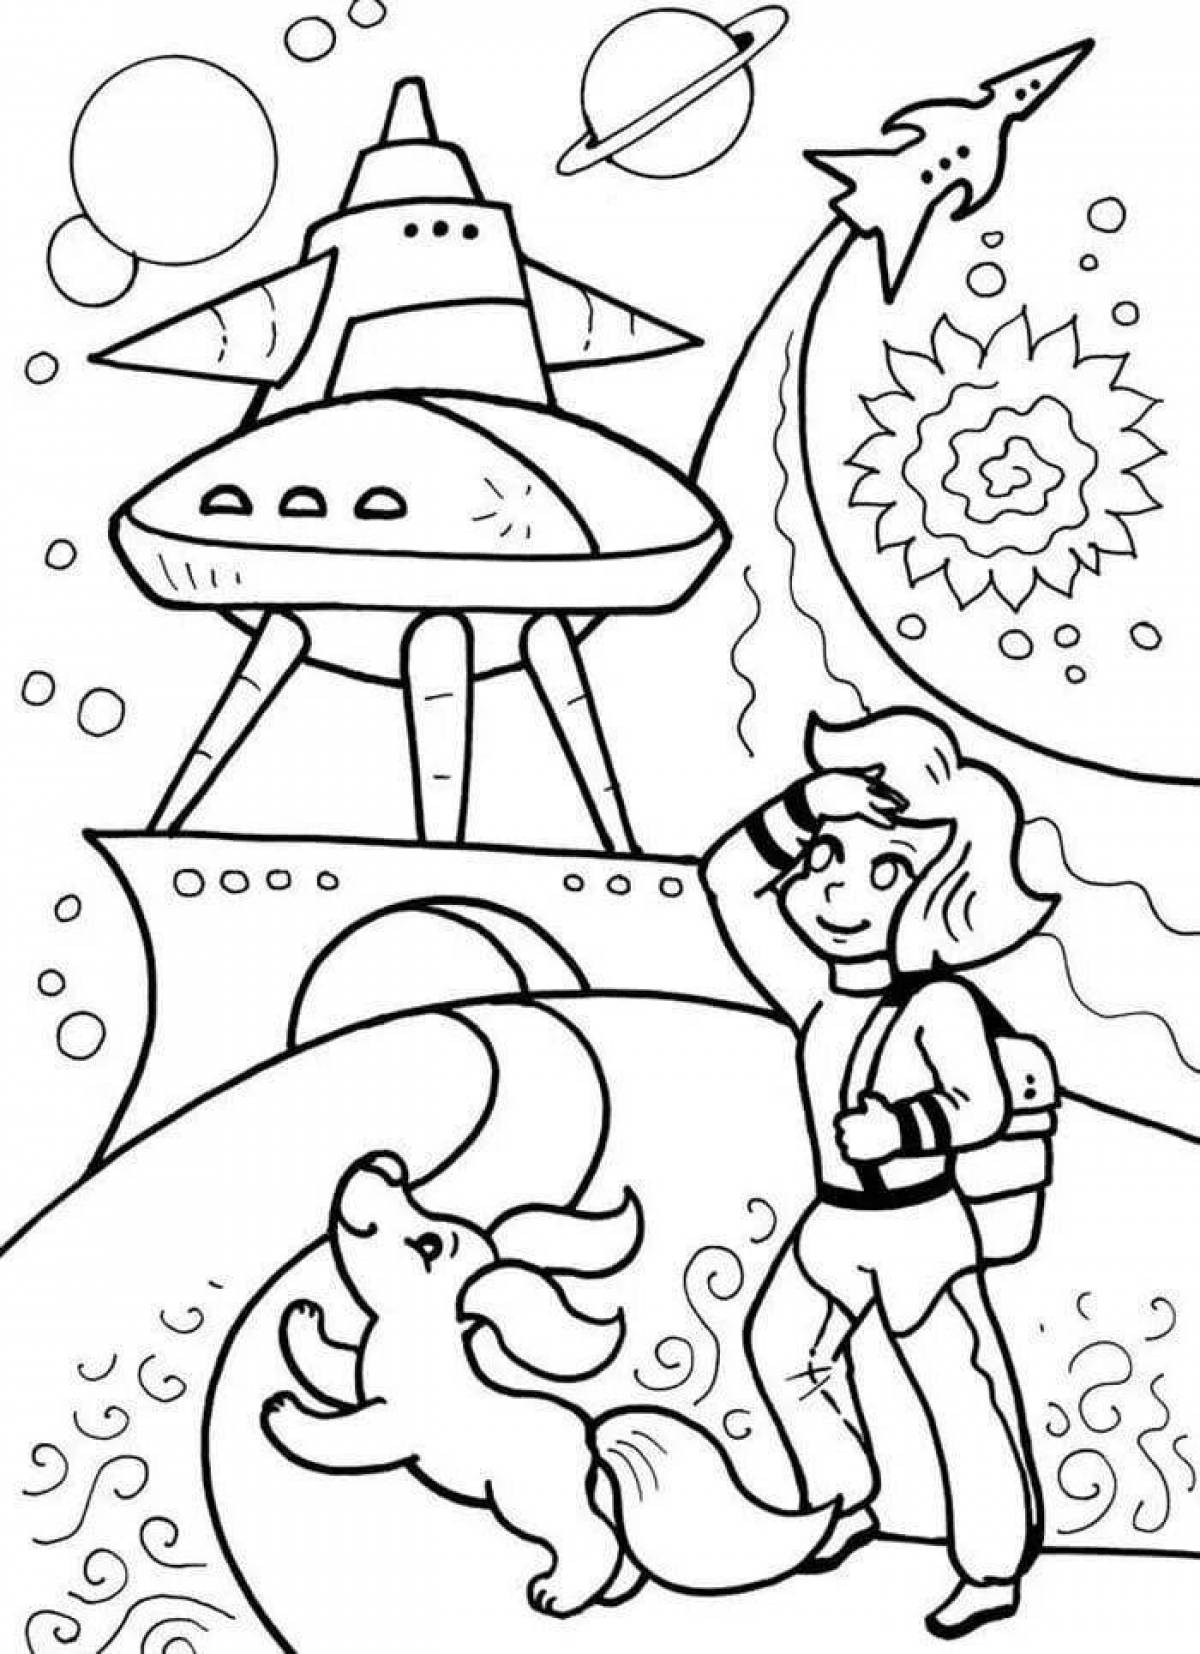 Adorable space cartoon coloring book